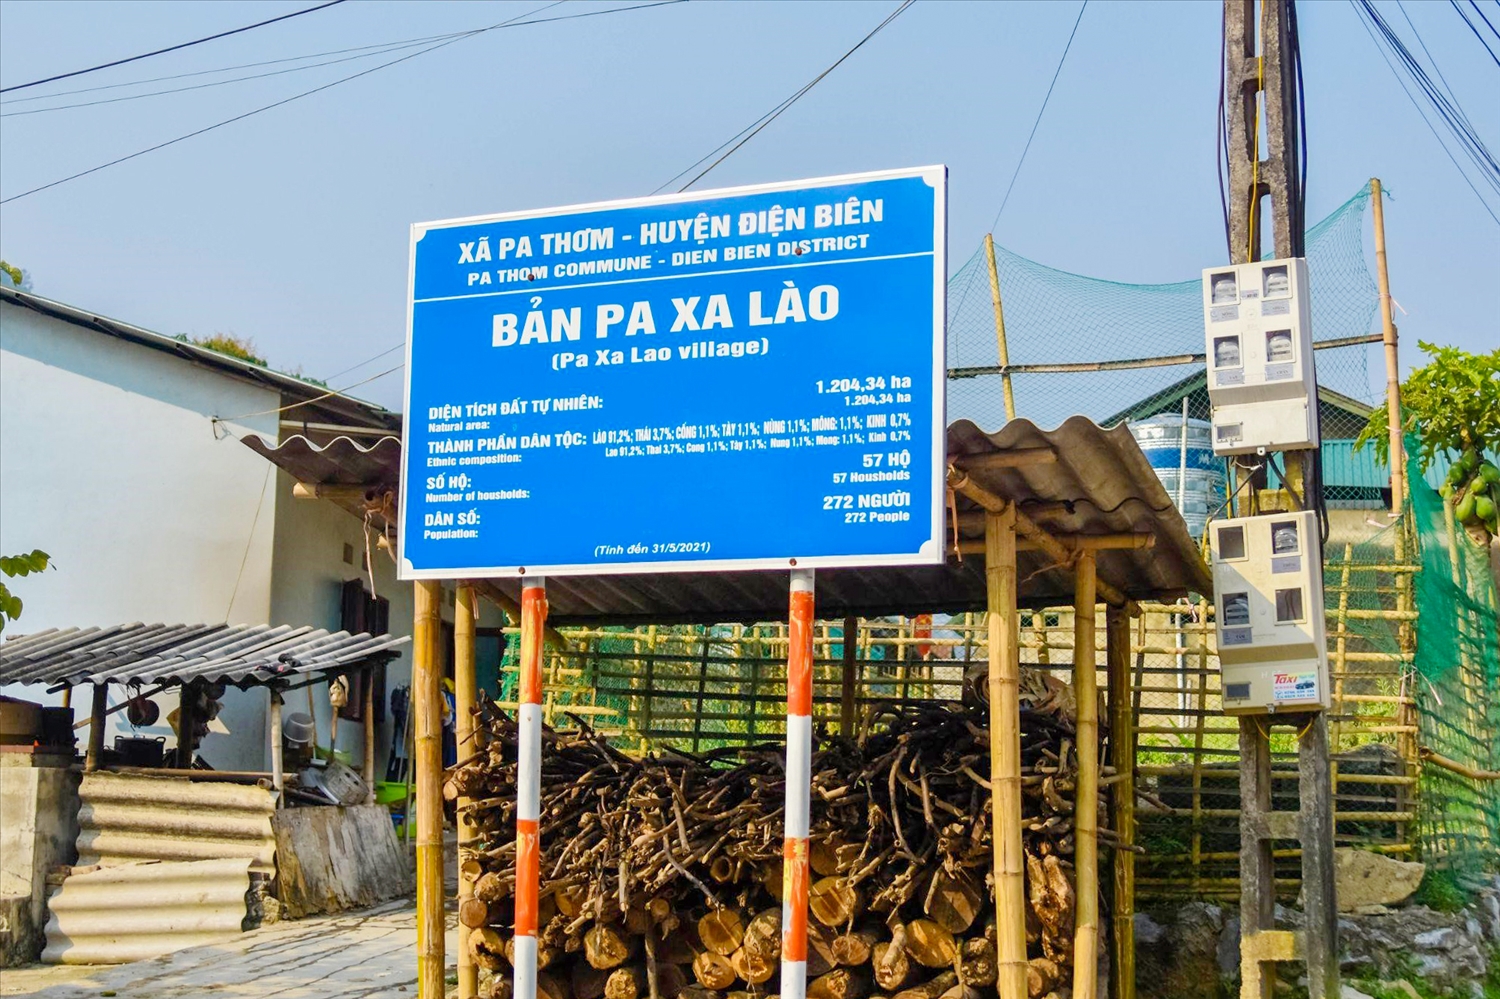 Pa Xá Lào cách trung tâm thành phố Điện Biên 25km. Hiện tại, nơi này đã phát triển hơn rất nhiều nhờ hội nhập kinh tế - giáo dục - văn hóa. Bên cạnh đó, bản làng còn mở rộng nghề dệt thổ cẩm truyền thống